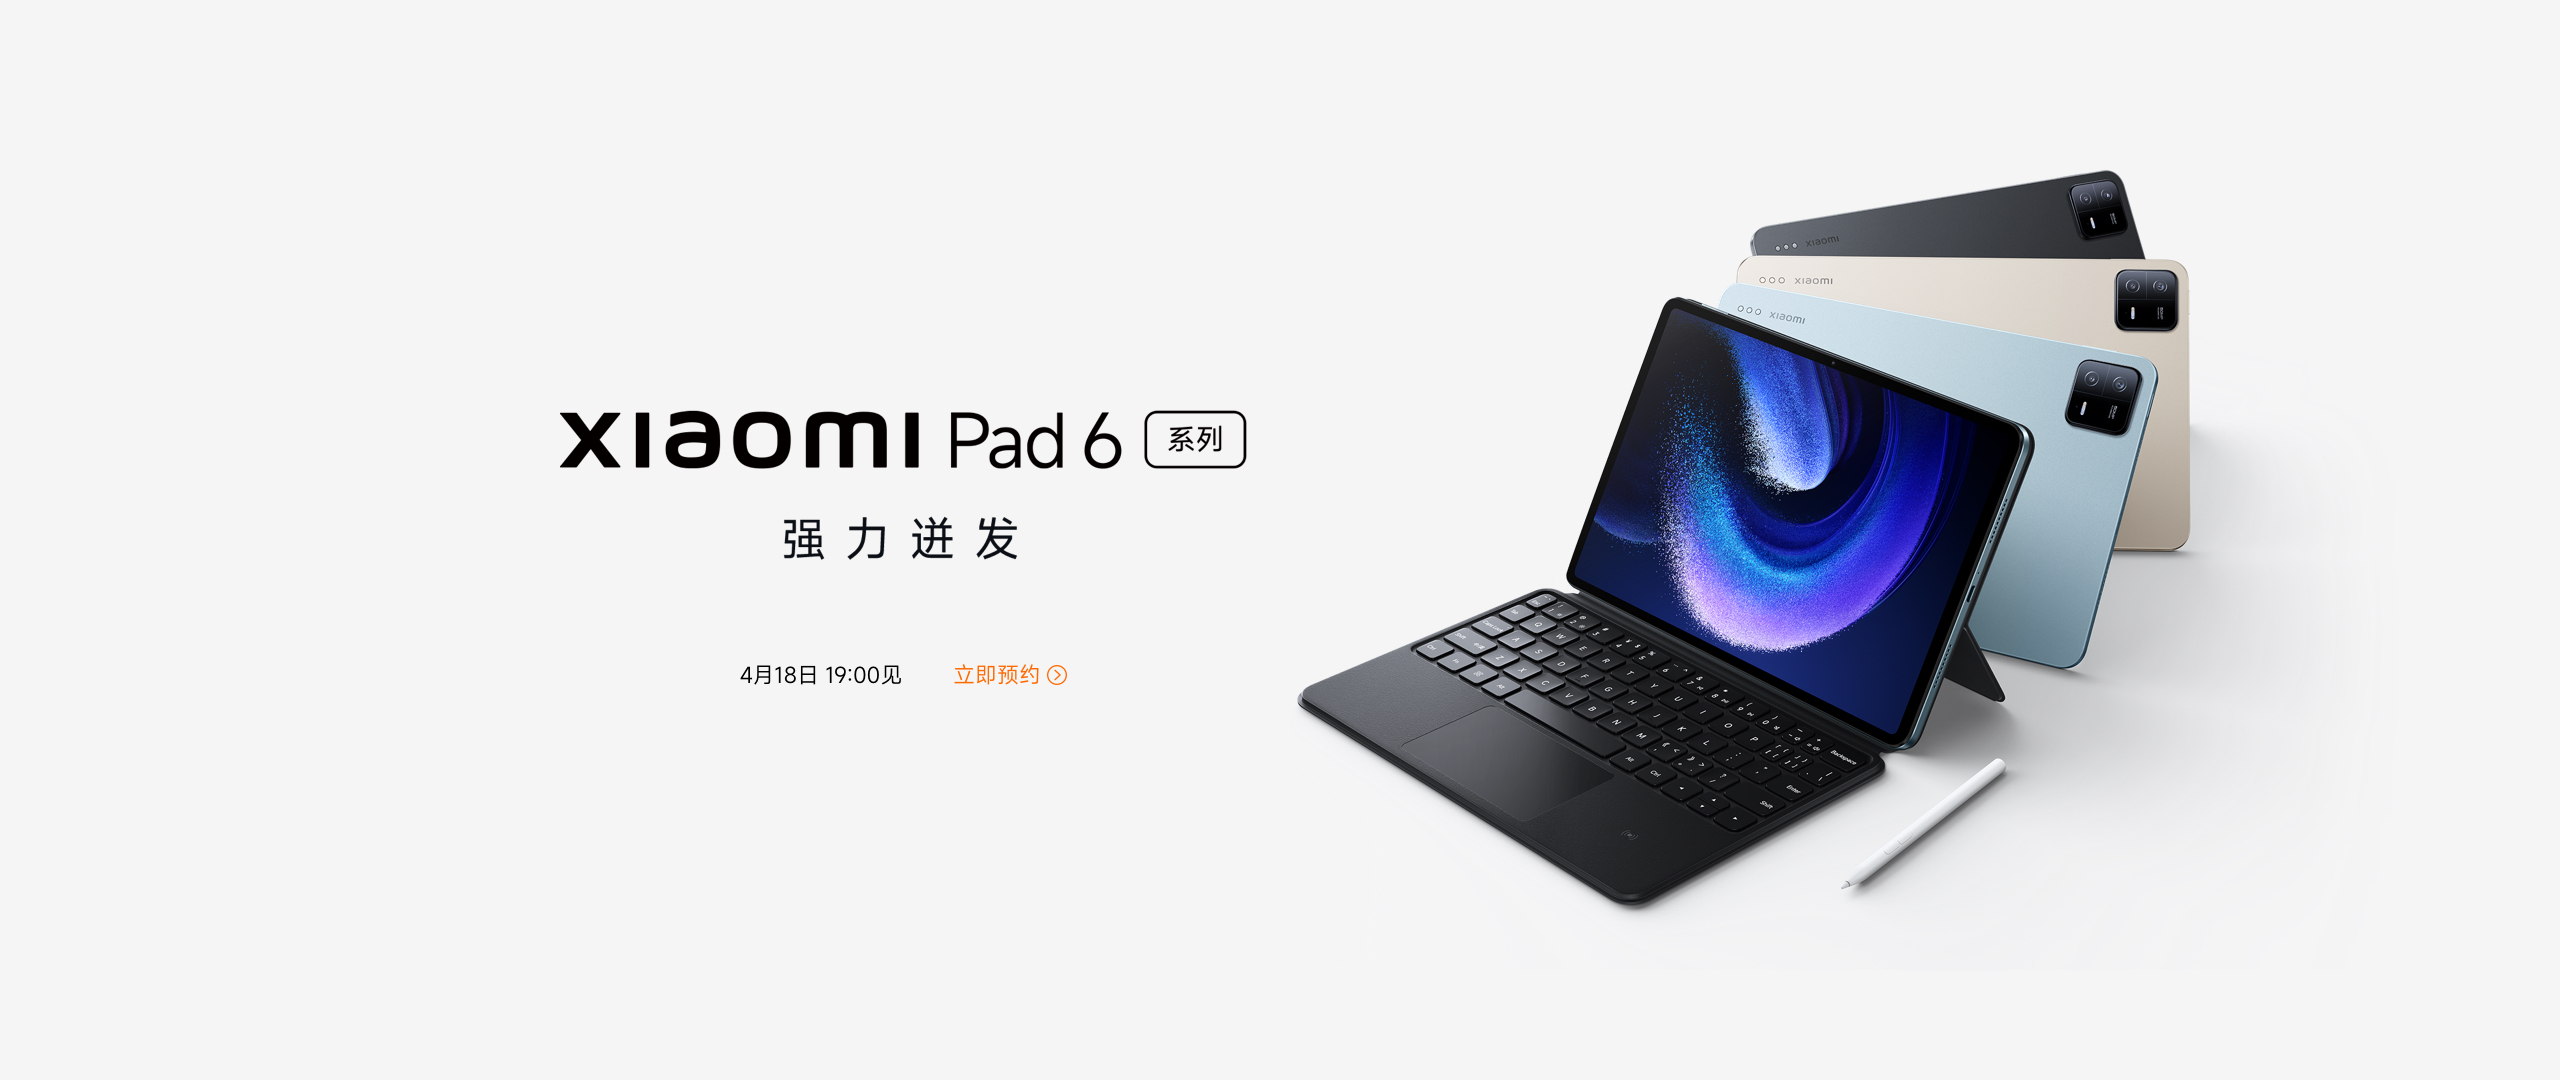 Xiaomi confirme la présentation officielle des nouvelles tablettes